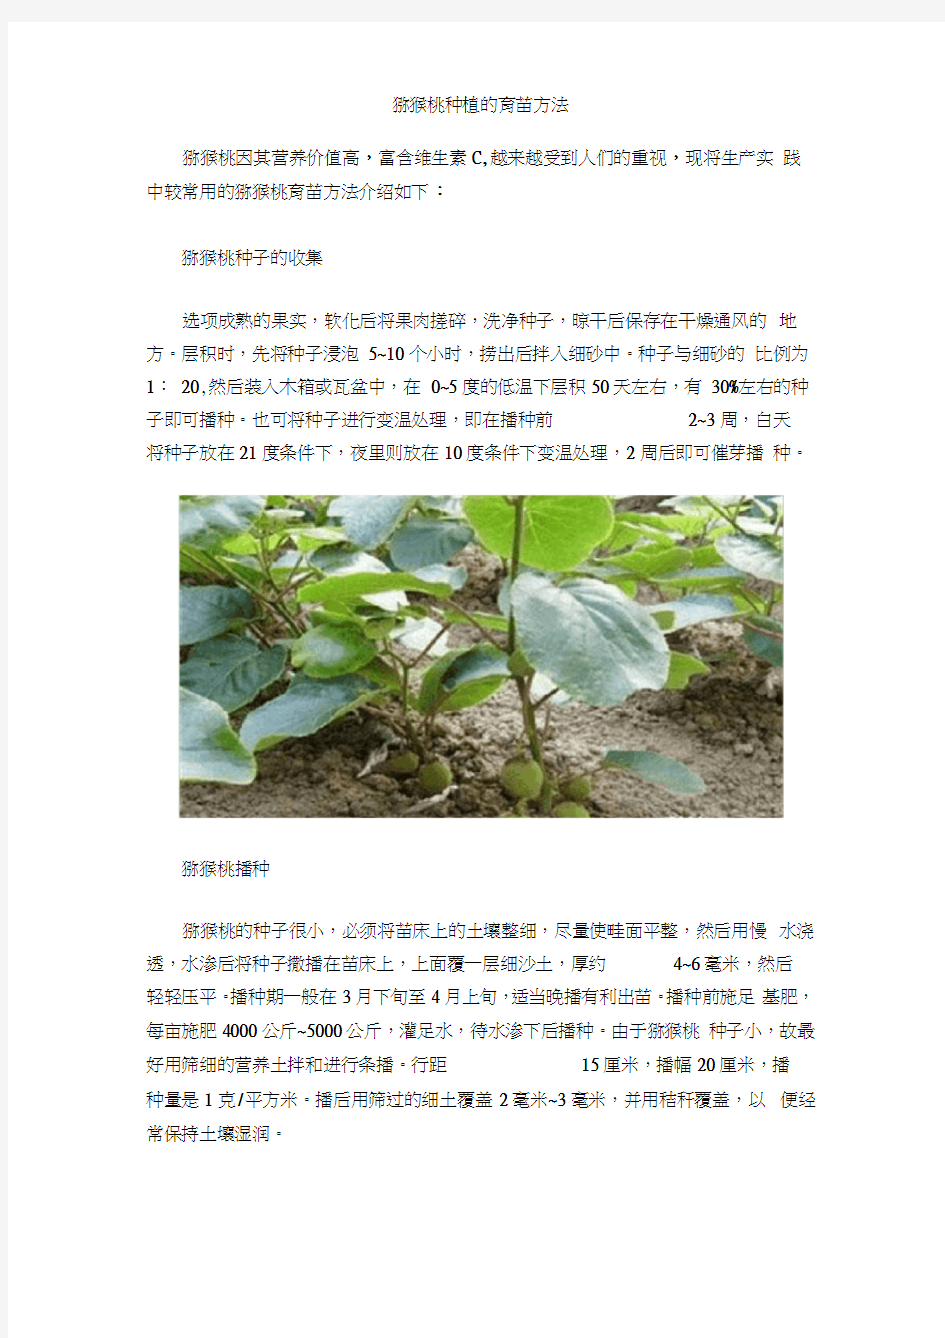 猕猴桃种植的育苗方法(20210201155754)